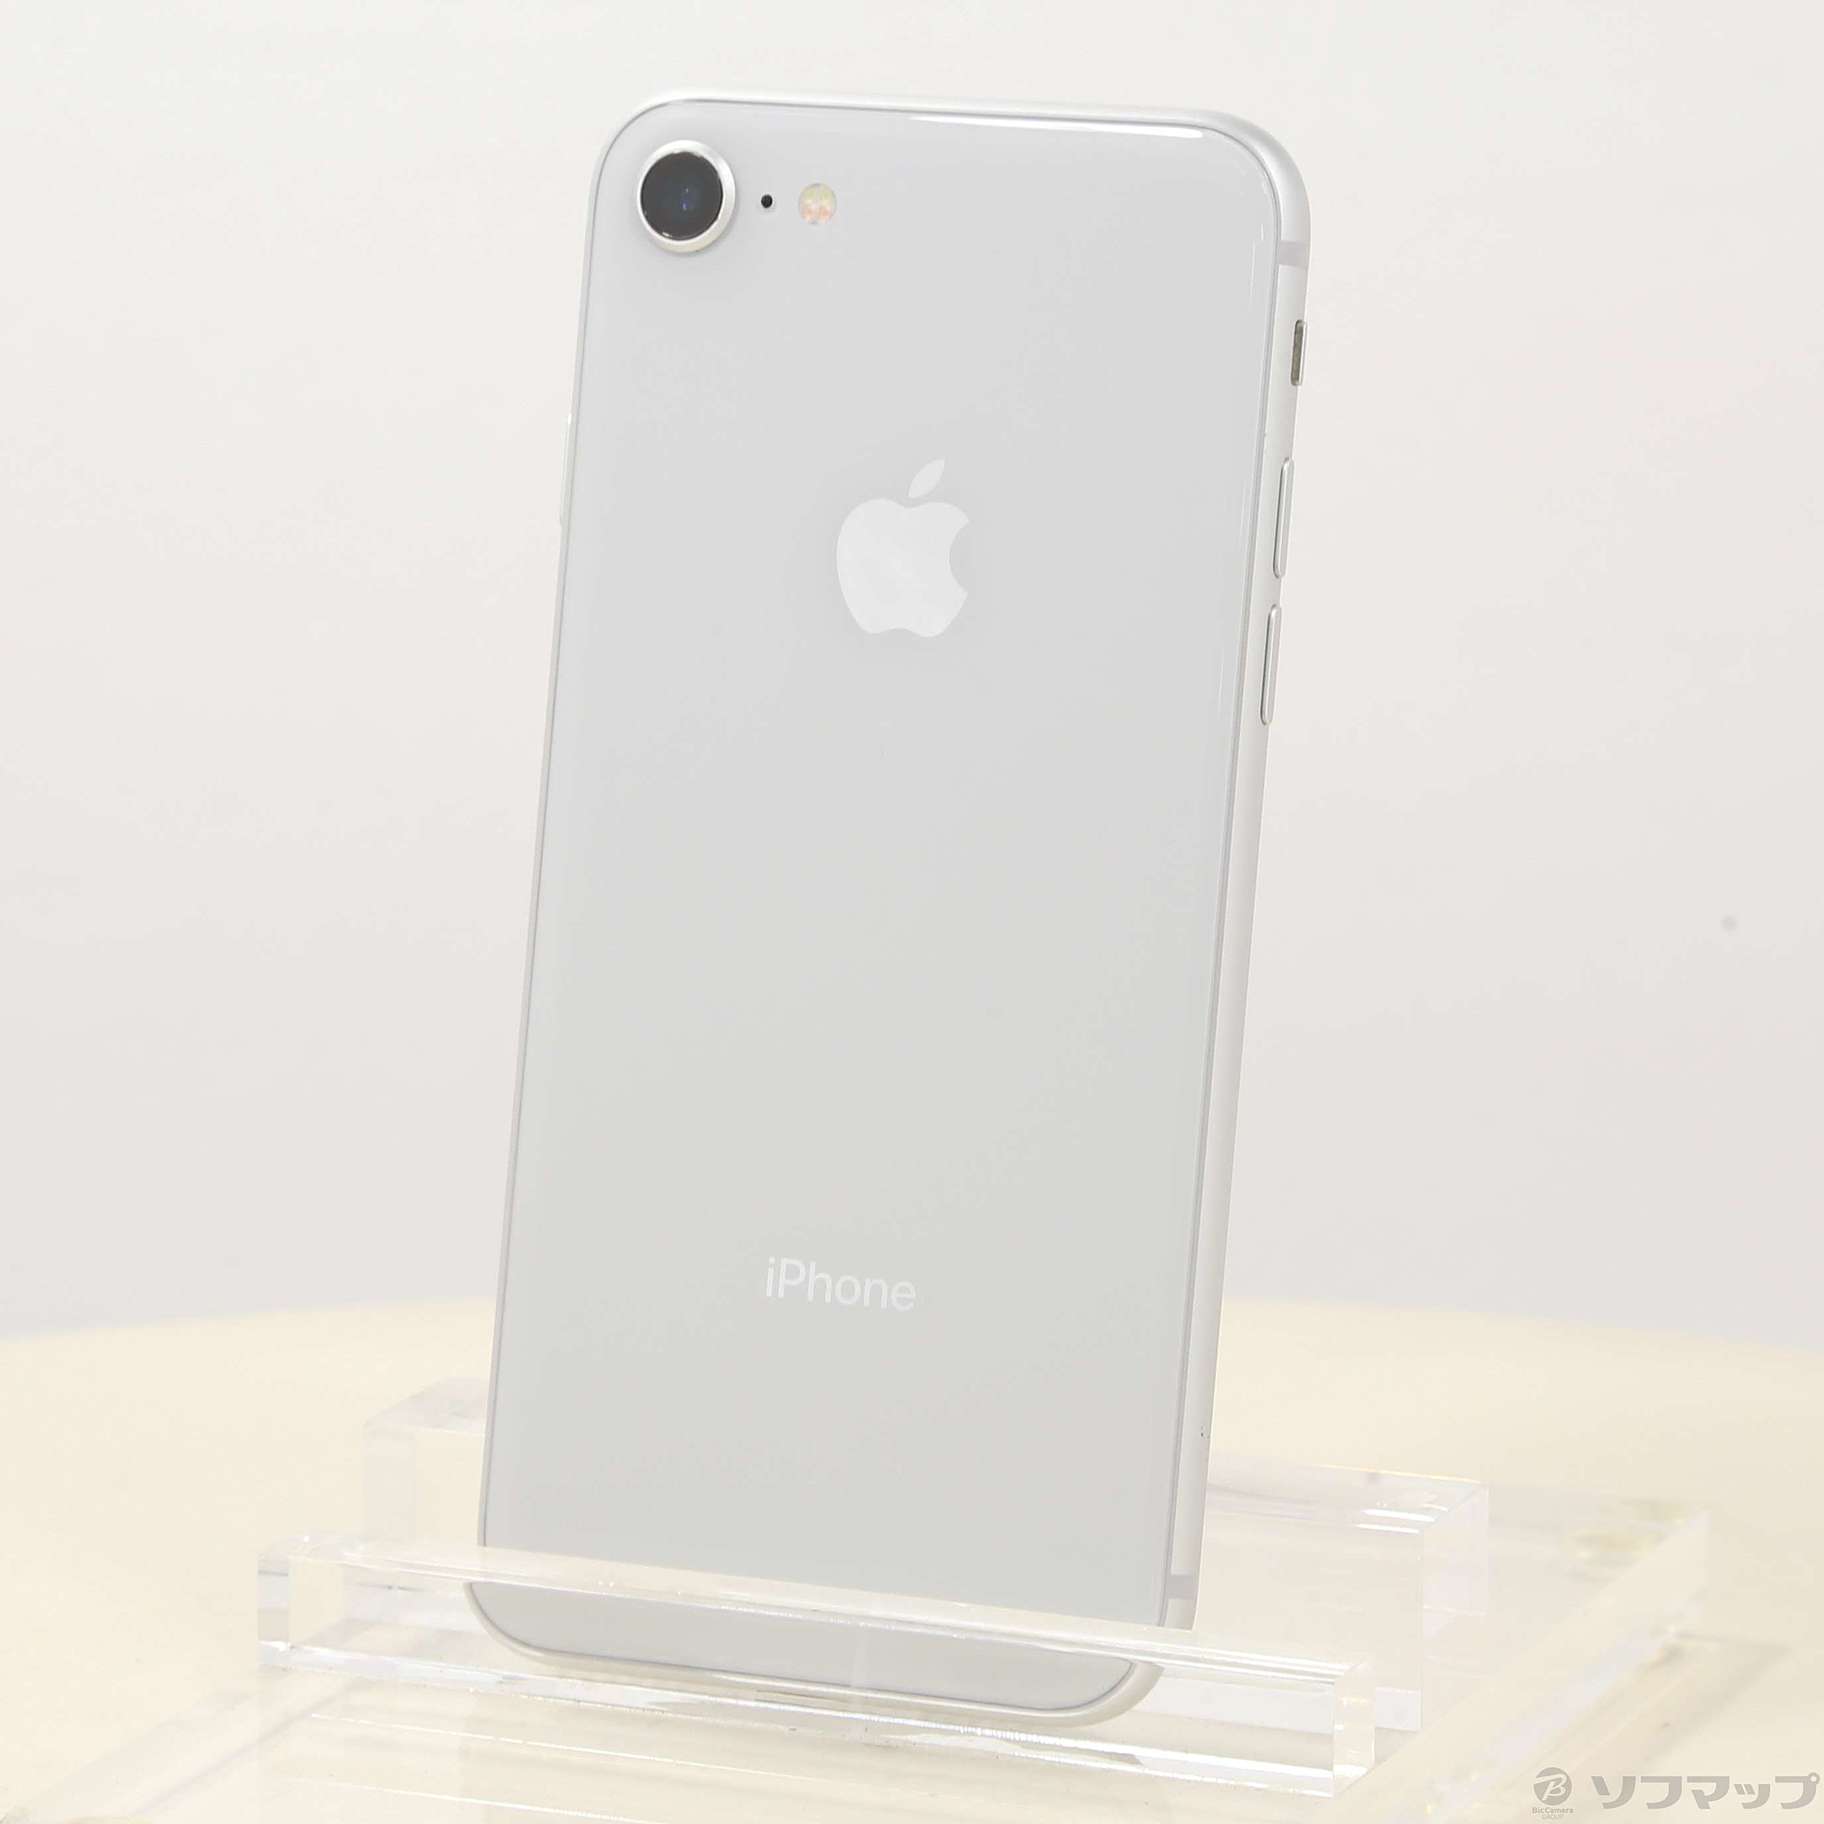 iPhone8 64GB silver simフリー - 携帯電話本体